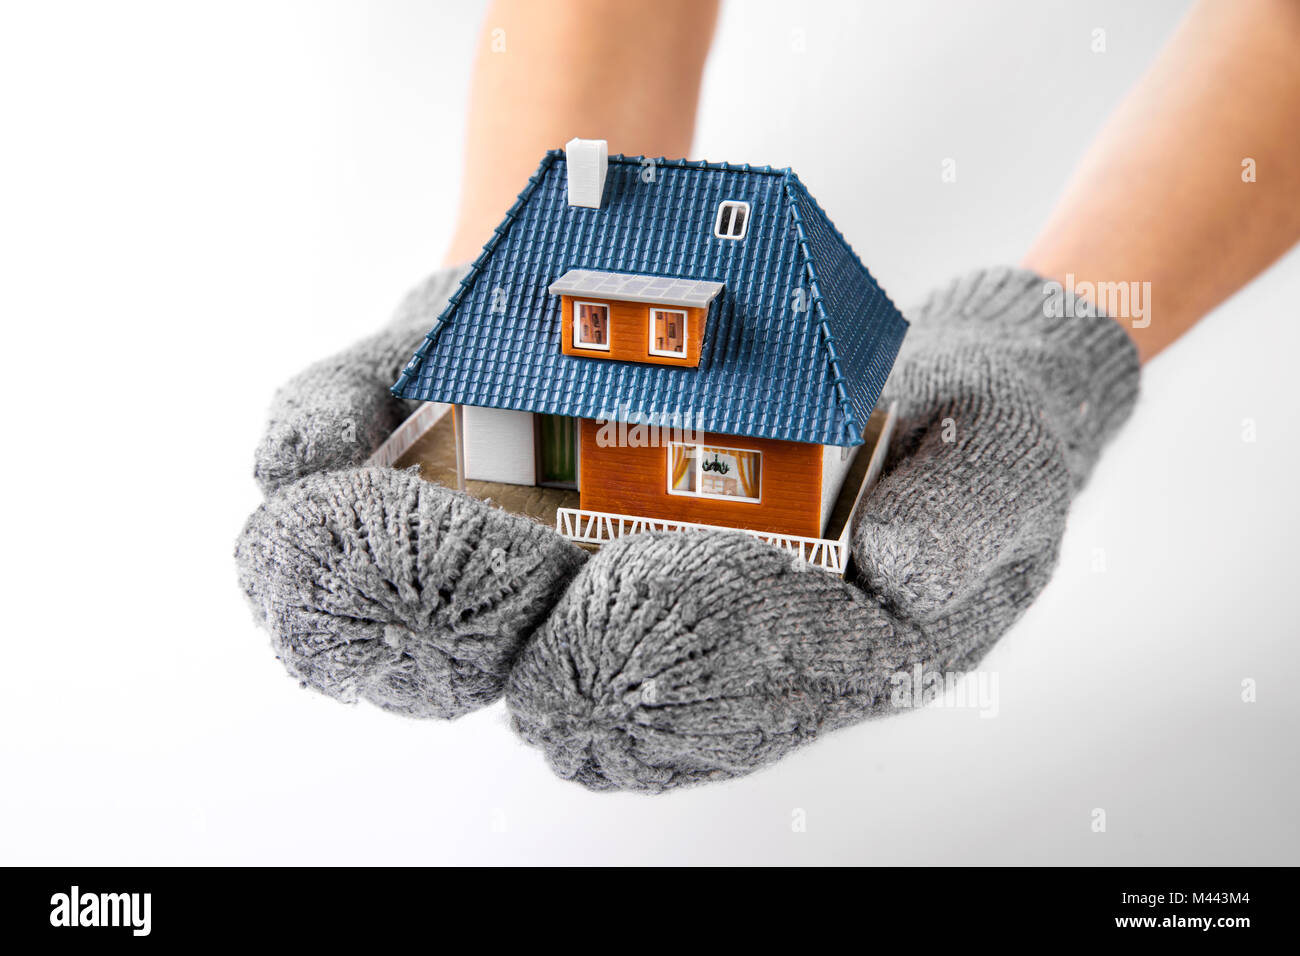 Assurance Maison et l'isolation concept. mains avec des gants holding miniature house model Banque D'Images